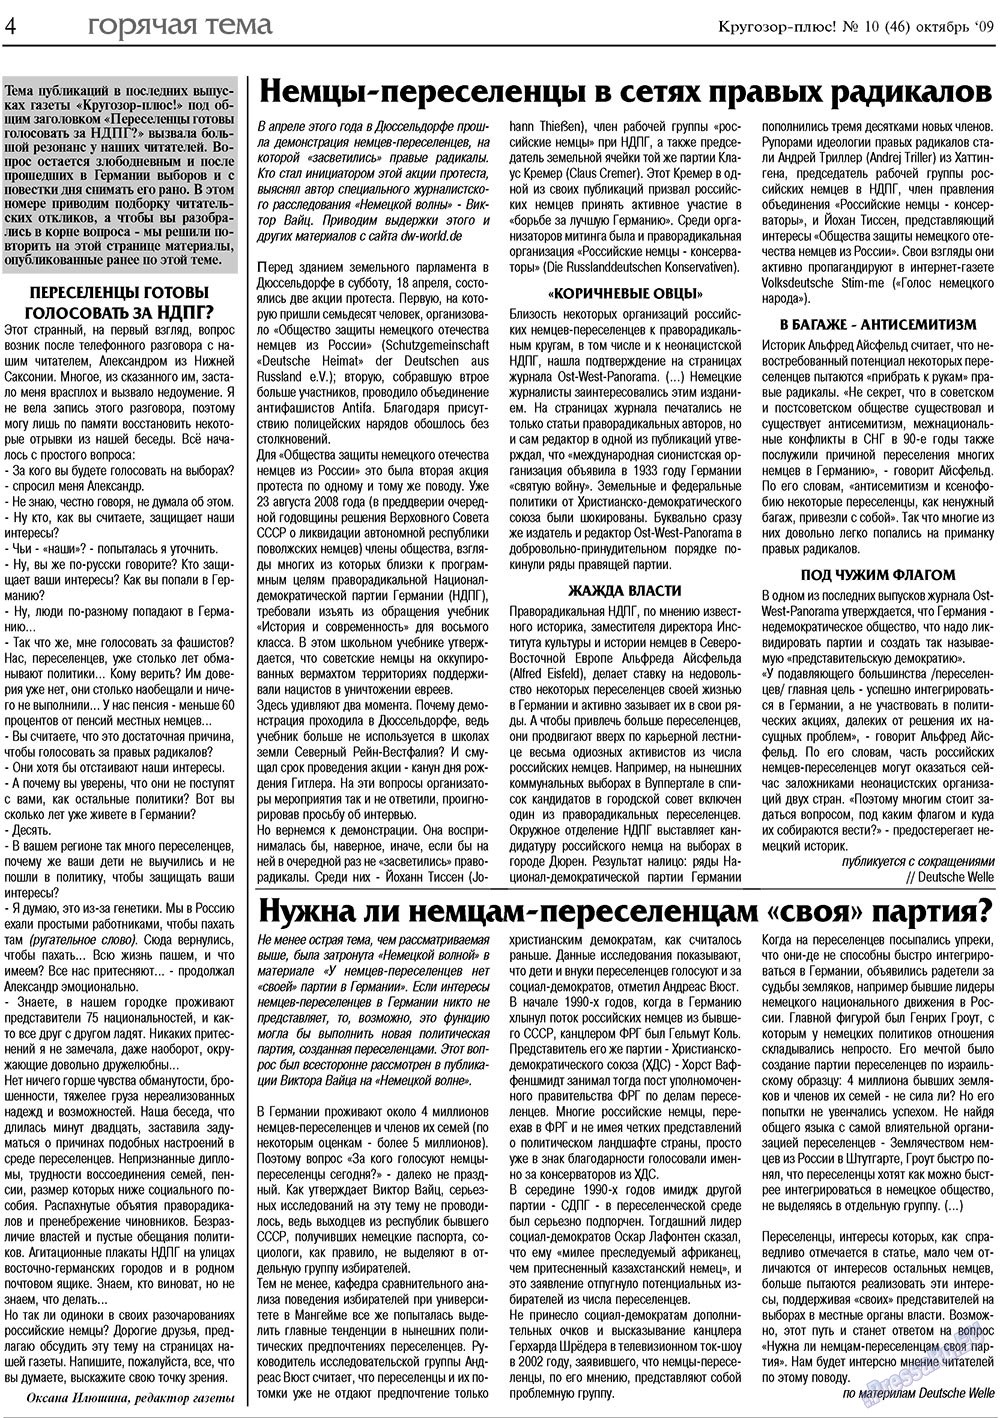 Кругозор плюс!, газета. 2009 №10 стр.4